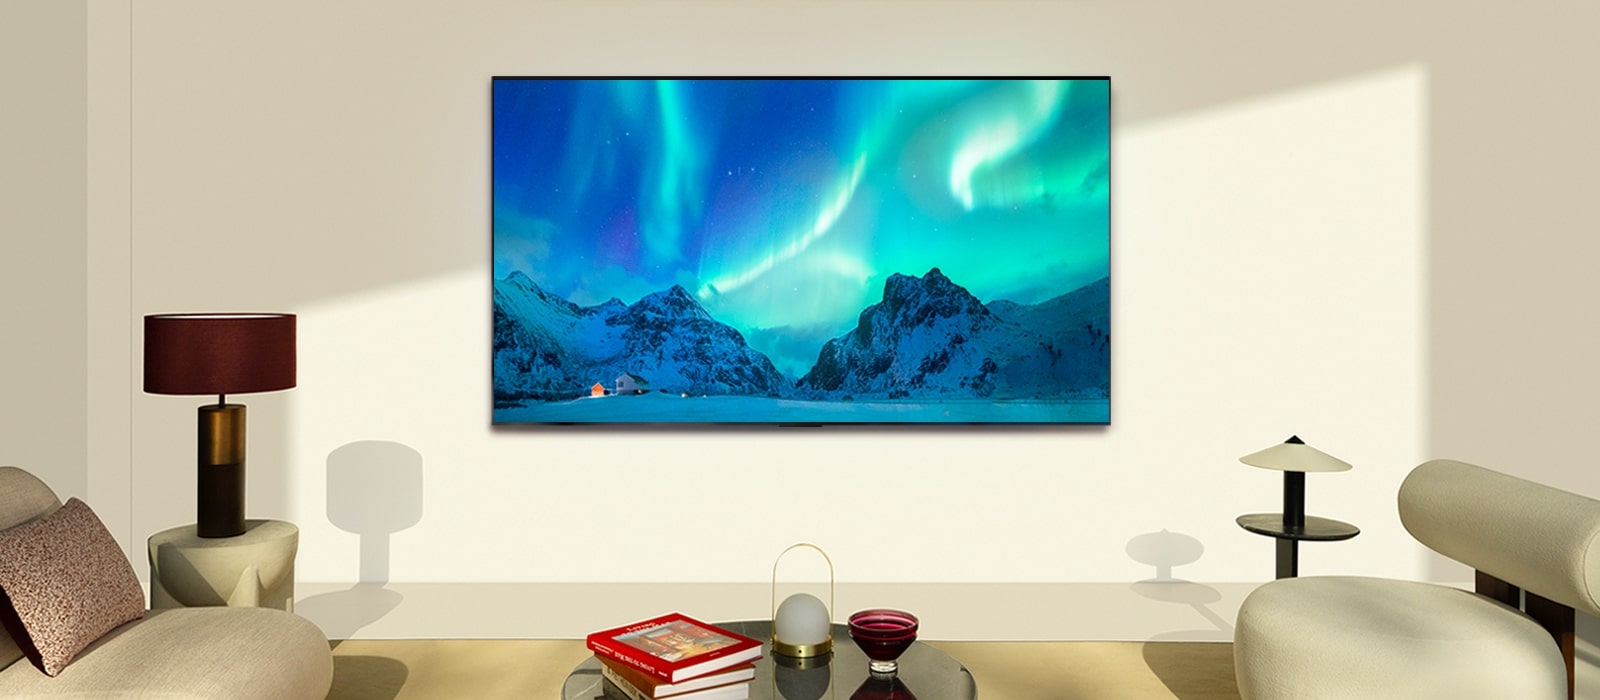 LG OLED TV y LG Soundbar en un moderno salón de día. La imagen en pantalla de la aurora boreal se muestra con los niveles de brillo ideales.